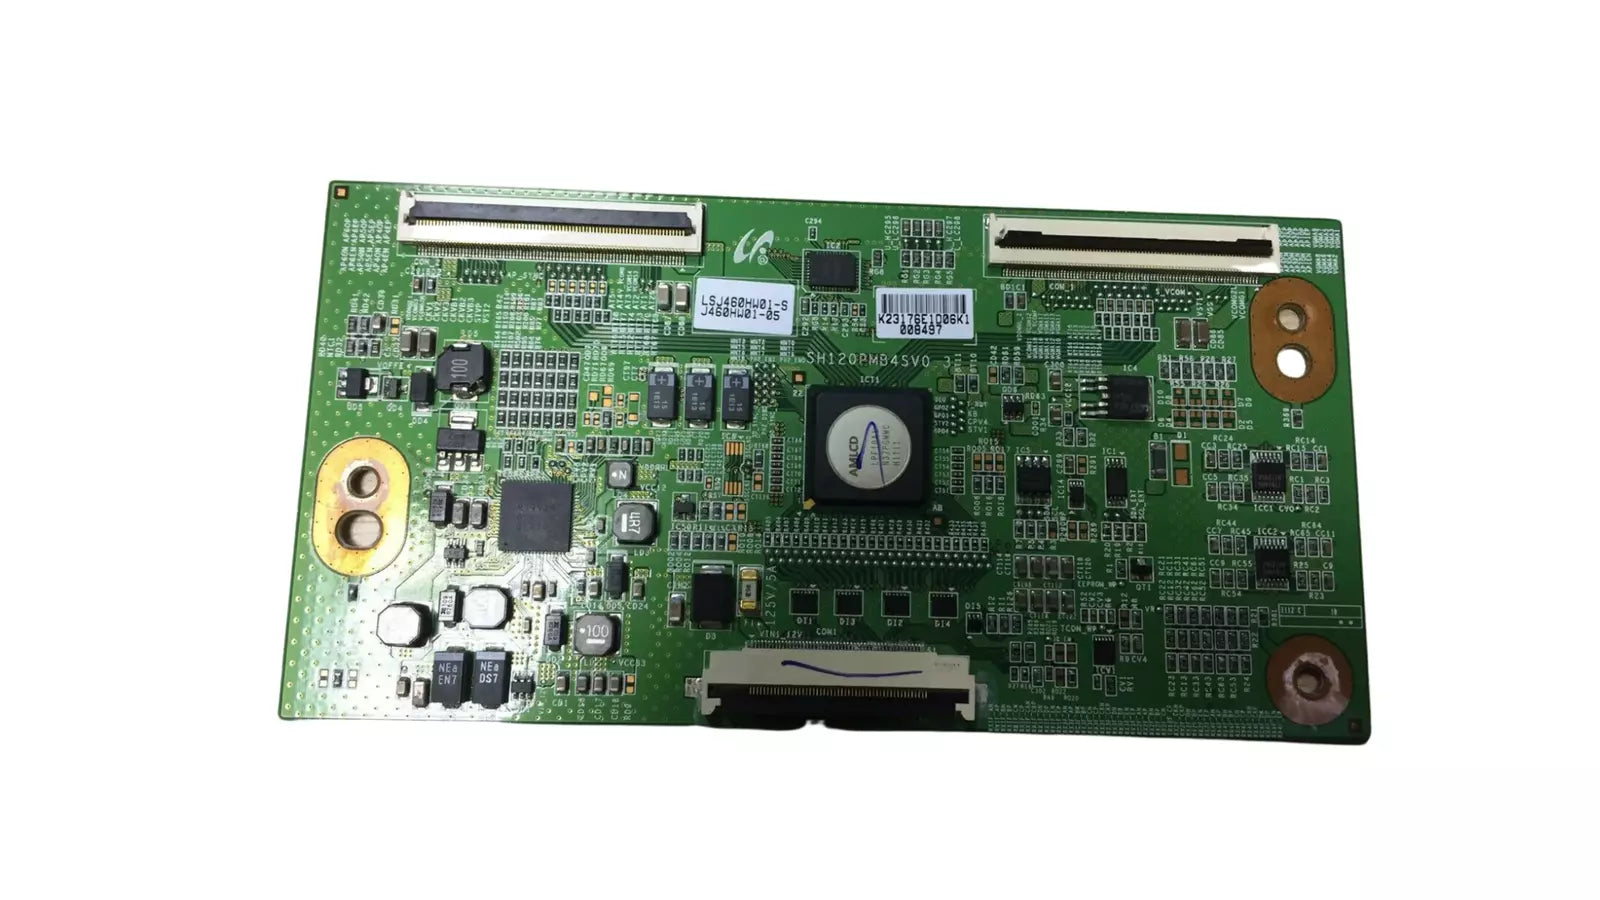 SH120PMB4SV0.3 t-con board Samsung UE40D6500VS